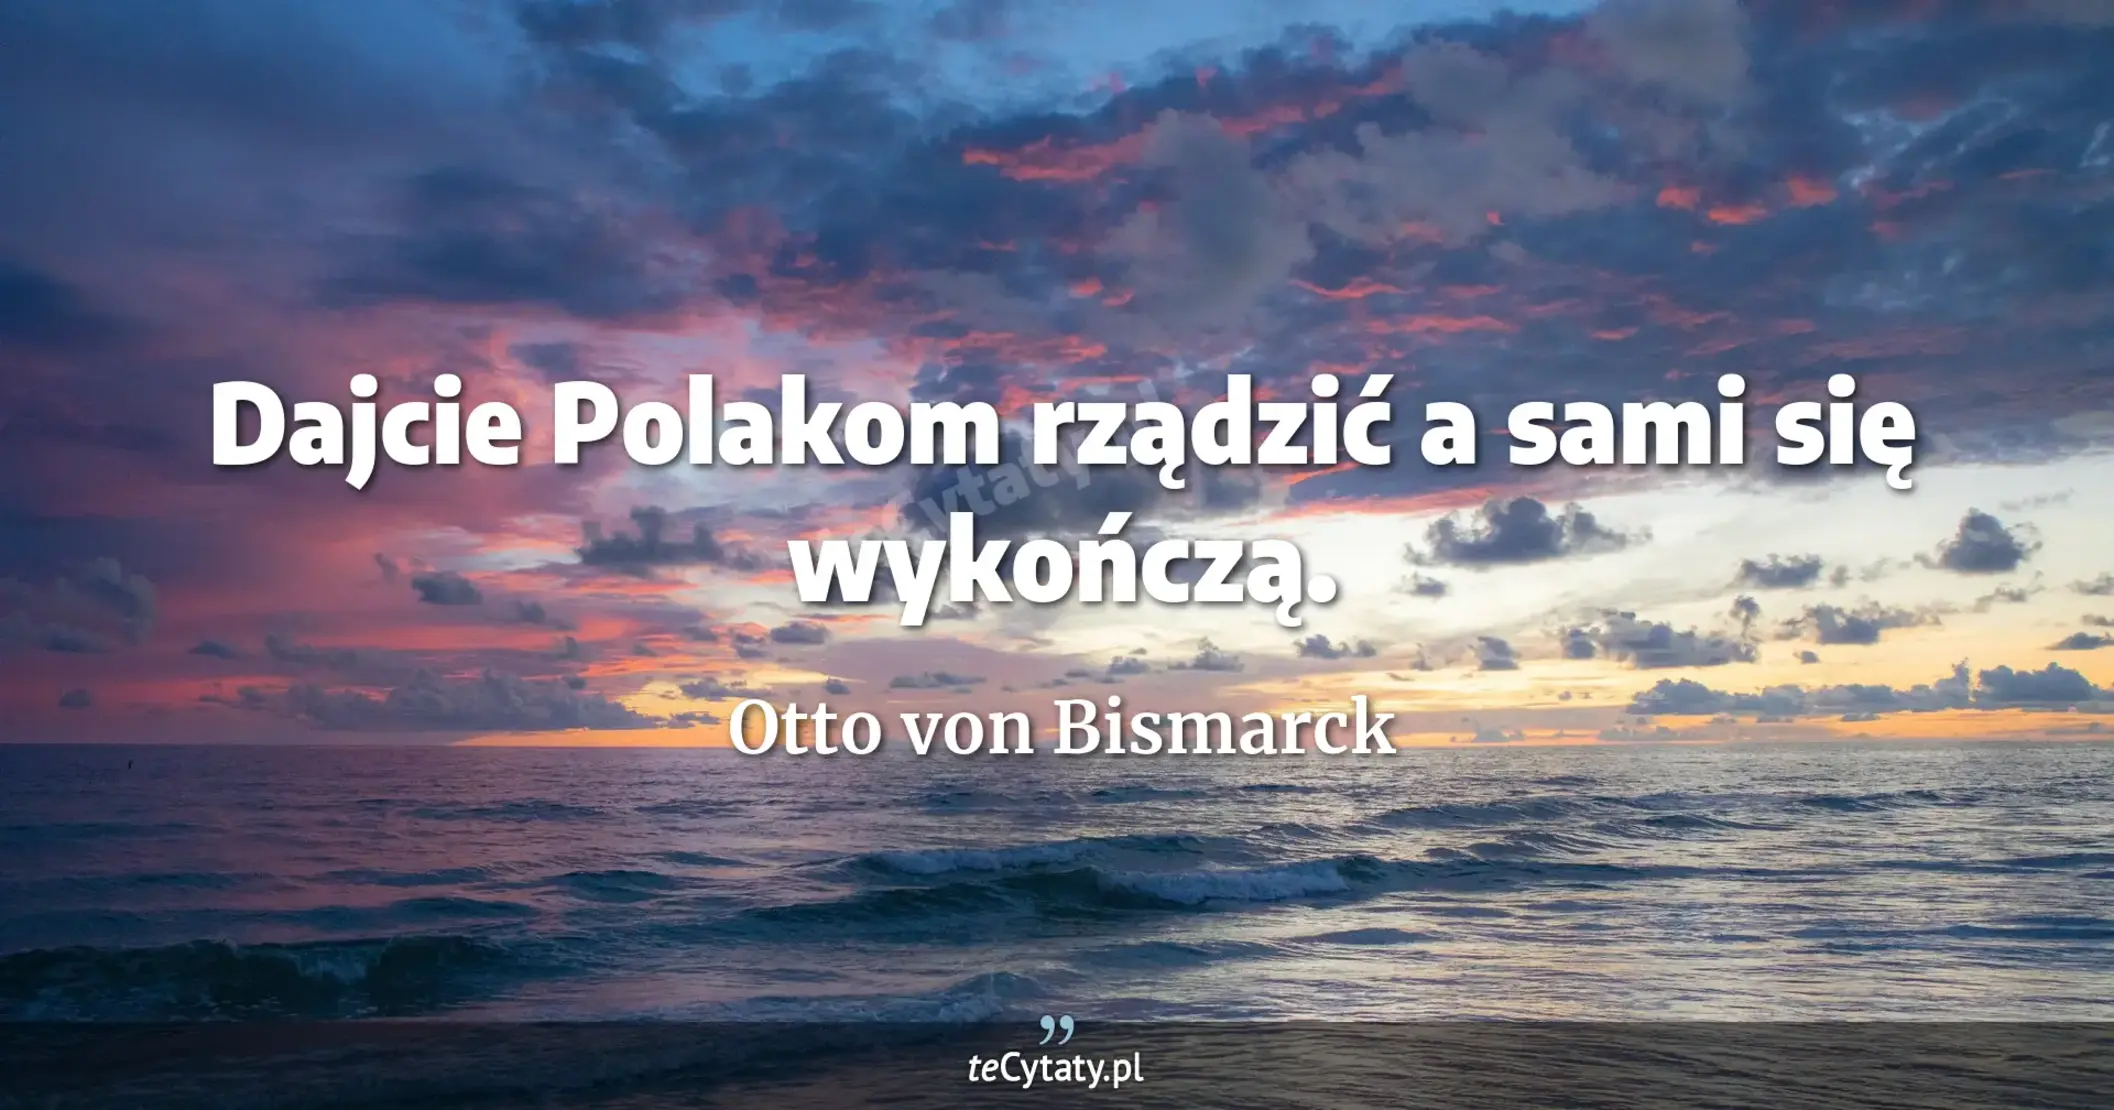 Dajcie Polakom rządzić a sami się wykończą. - Otto von Bismarck